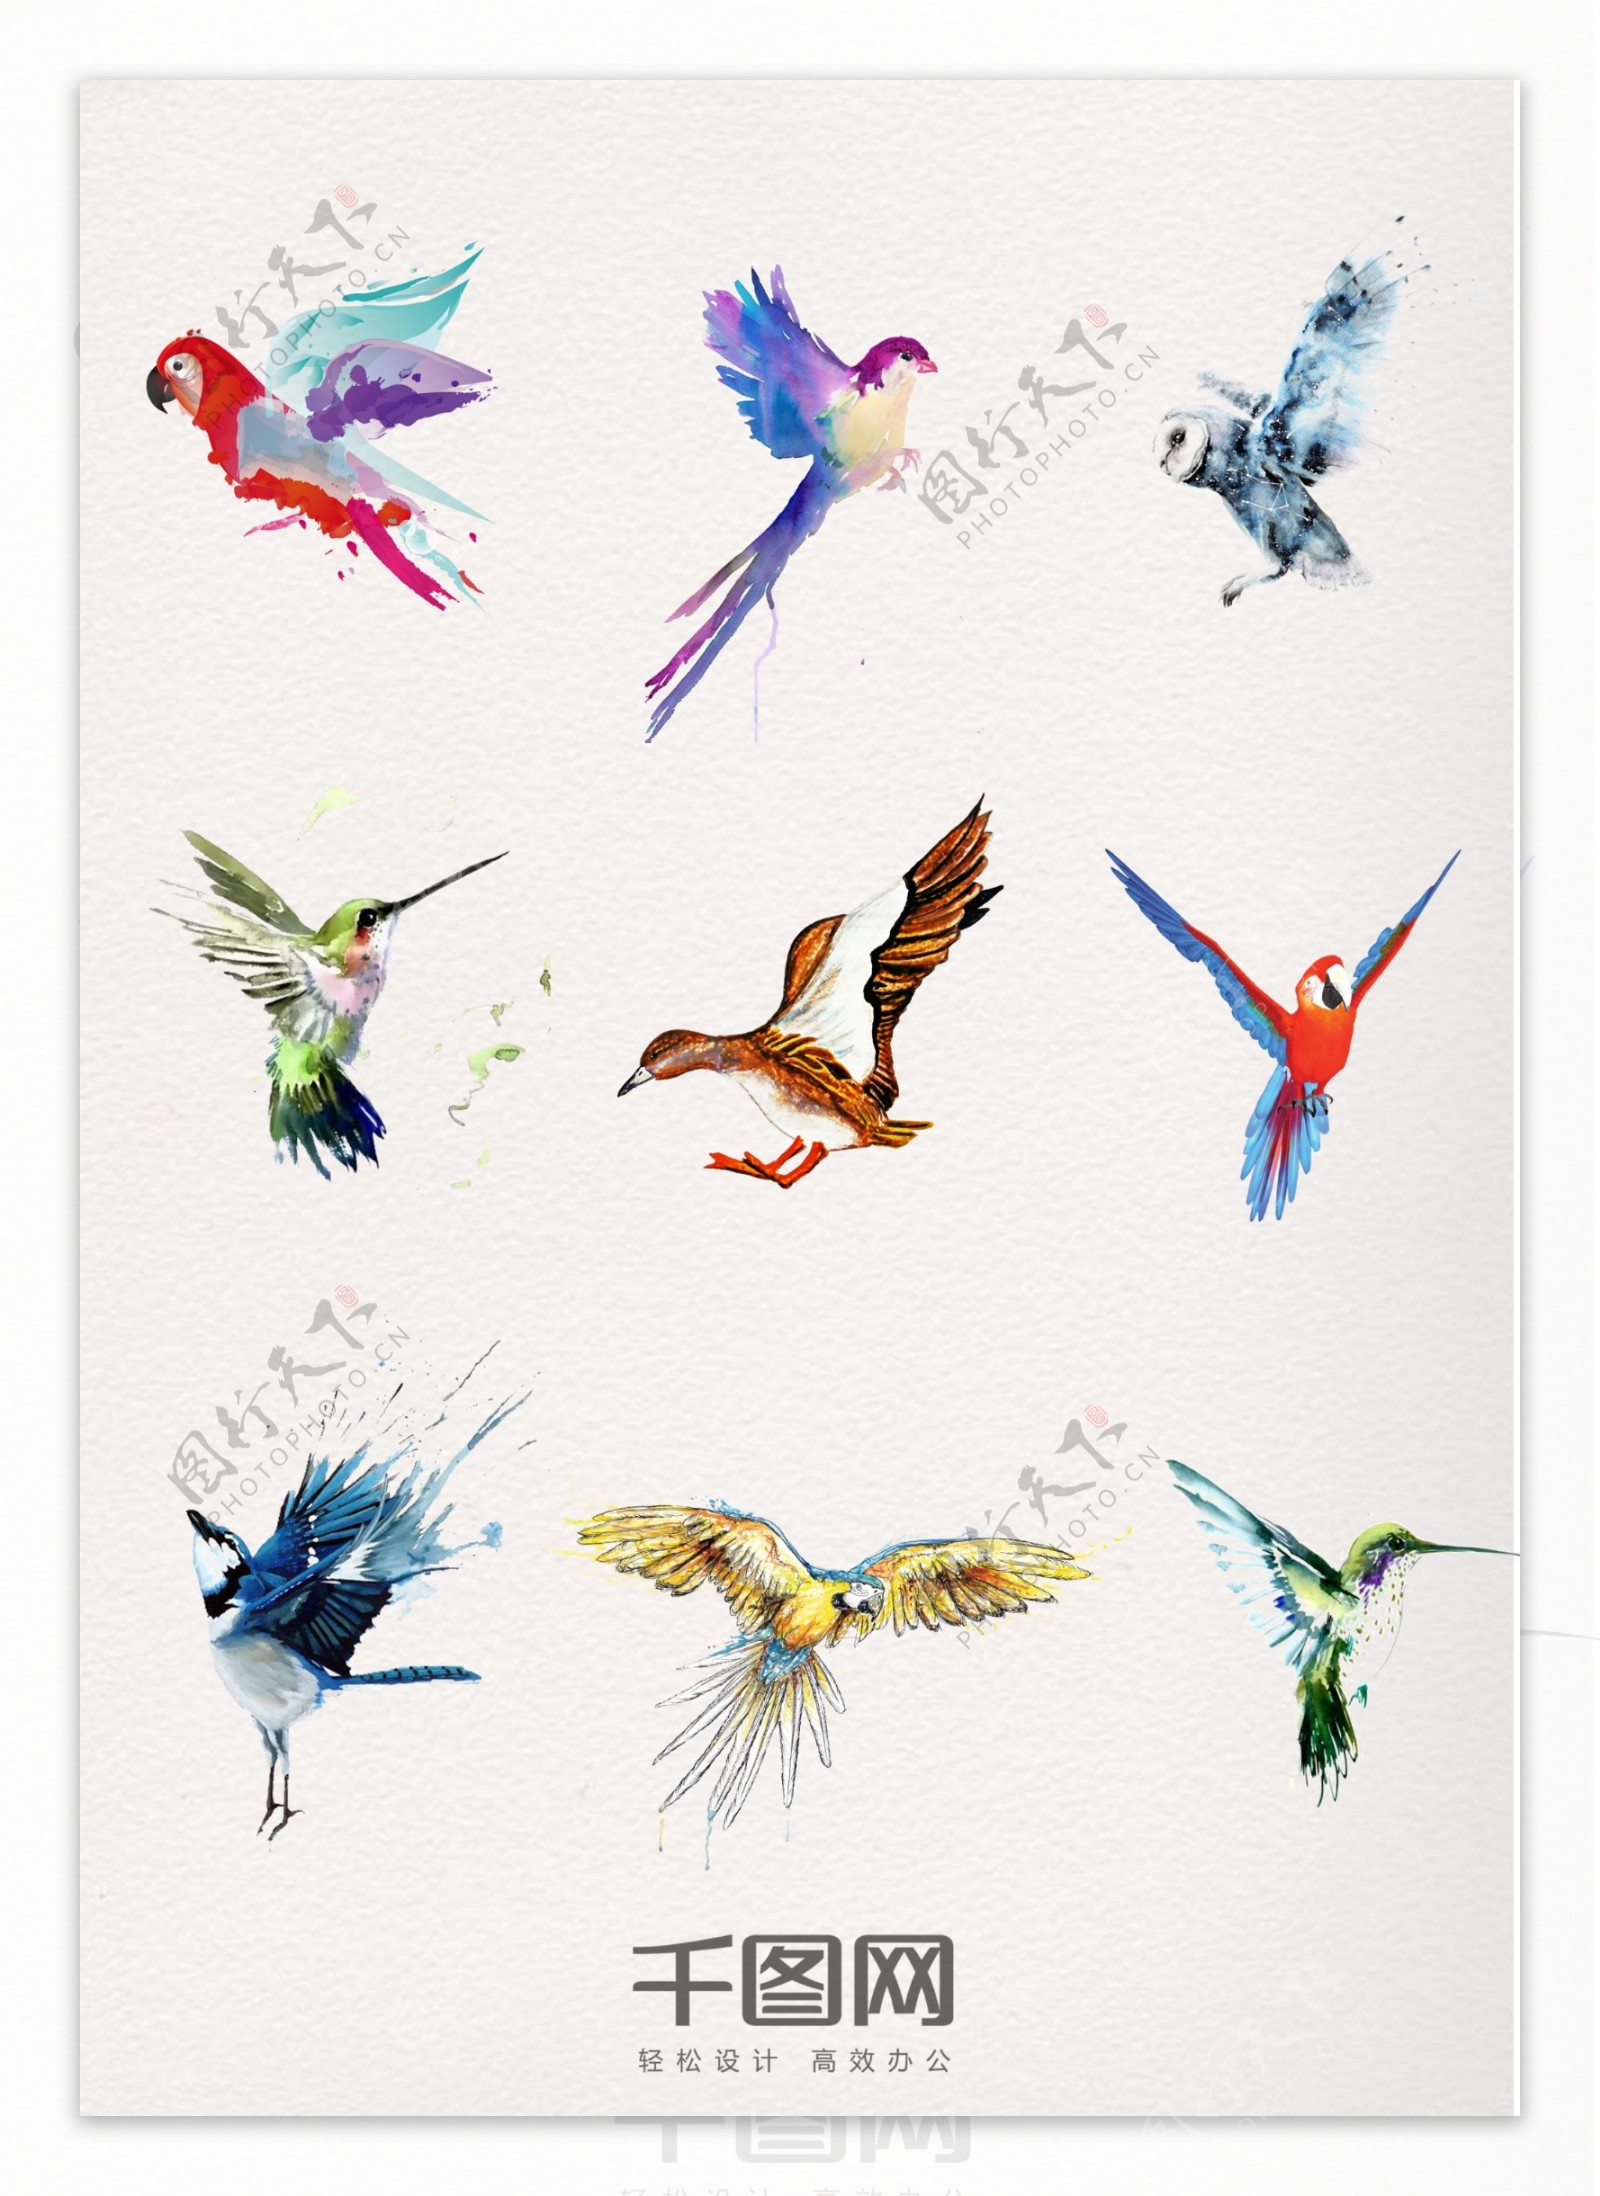 一组水彩动物飞鸟设计素材